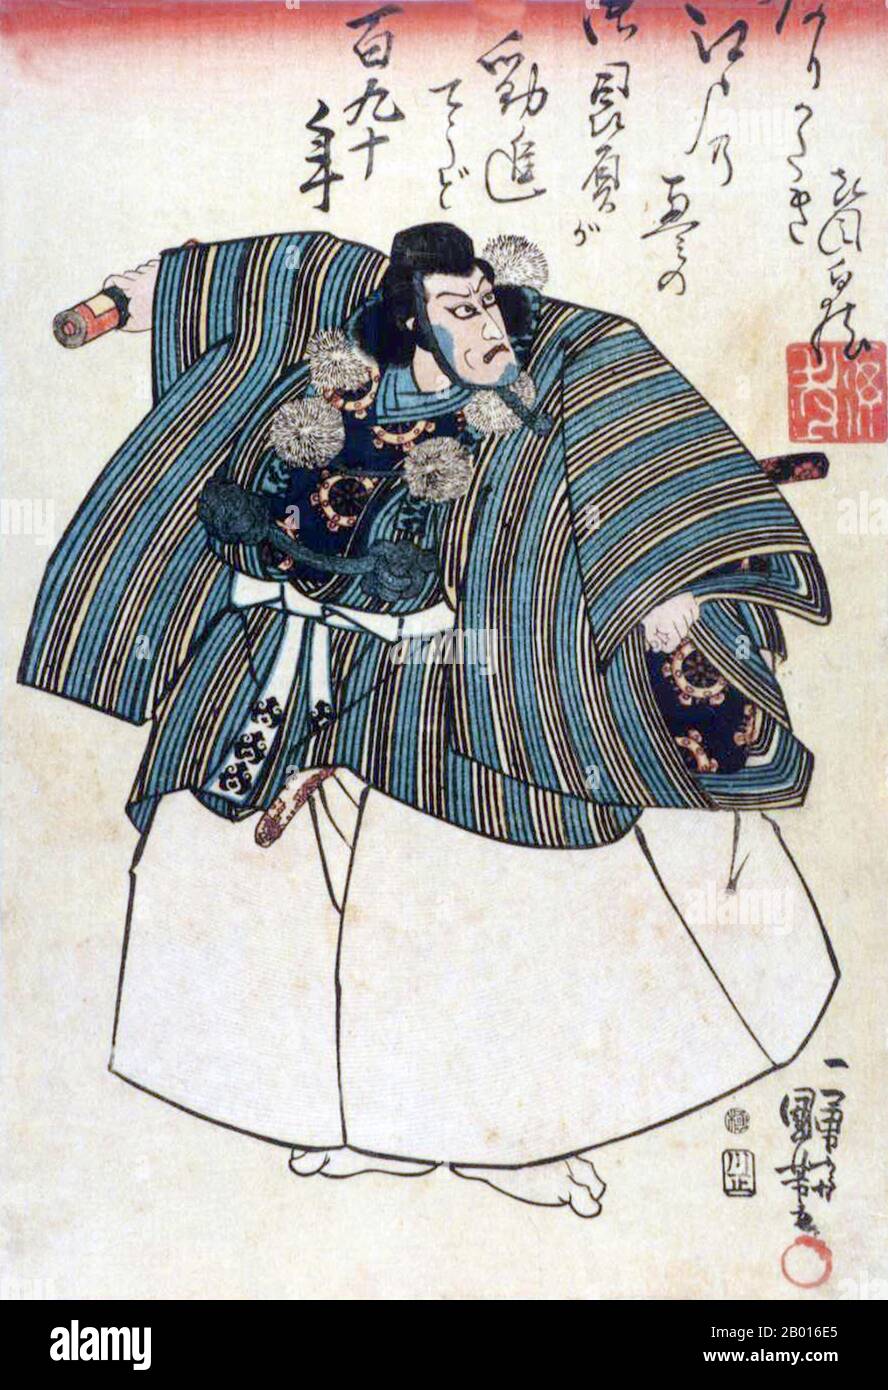 Japon: 'Ichikawa Ebizo V as Benkei'.Imprimé Ukiyo-e par Utagawa Kuniyoshi (1er janvier 1798 - 14 avril 1861), 1840.Ichikawa Ebizō V en tant que Benkei, en mars 1840, Edo Kawarazaki-za première production de Kanjinchō.Utagawa Kuniyoshi a été l'un des derniers grands maîtres du style ukiyo-e japonais d'imprimés et de peinture de blocs de bois.Il est associé à l'école Utagawa.La gamme des sujets préférés de Kuniyoshi comprenait de nombreux genres : paysages, belles femmes, acteurs Kabuki, chats et animaux mythiques.Il est connu pour les représentations des batailles des samouraïs et des héros légendaires. Banque D'Images